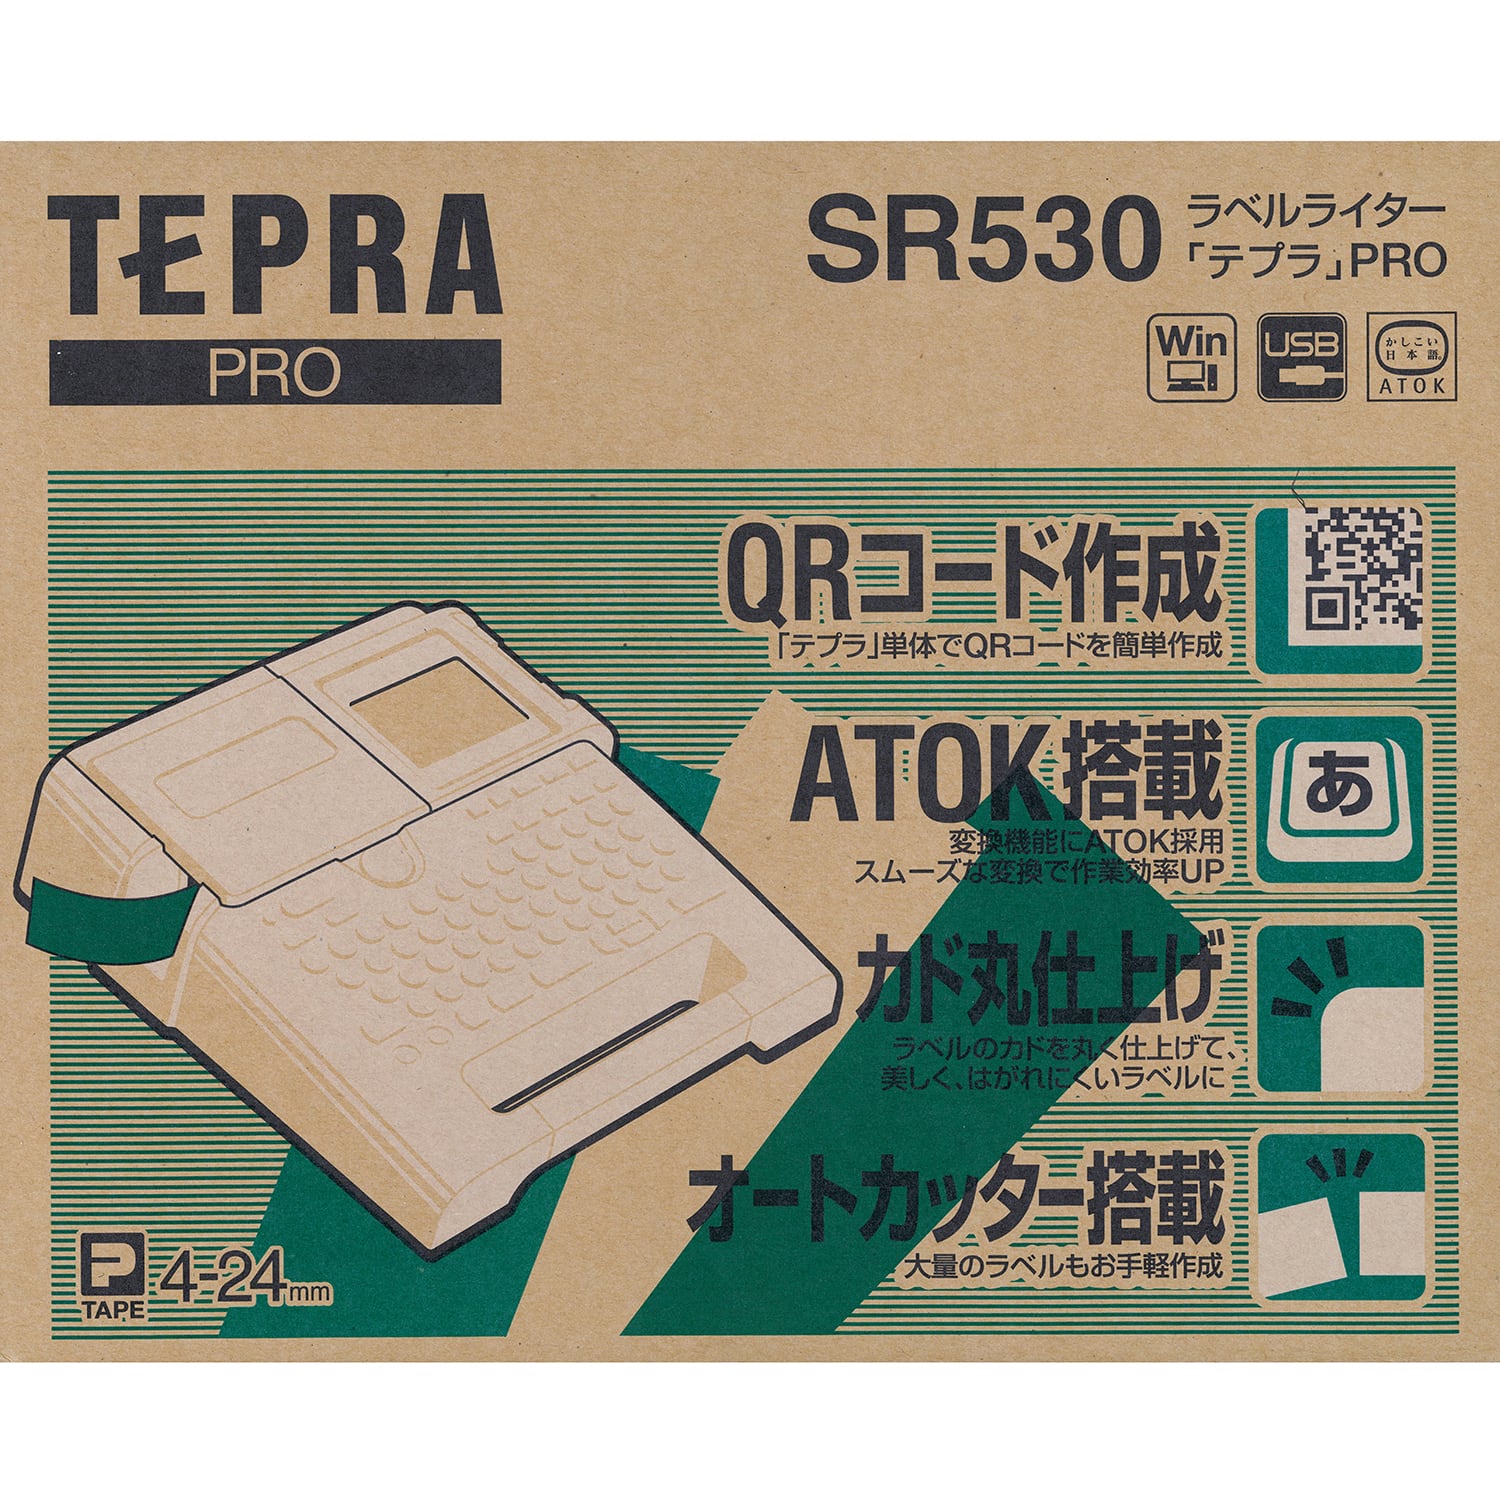 テプラ PRO SR530 キングジム アルファノート(六本木文房具店)